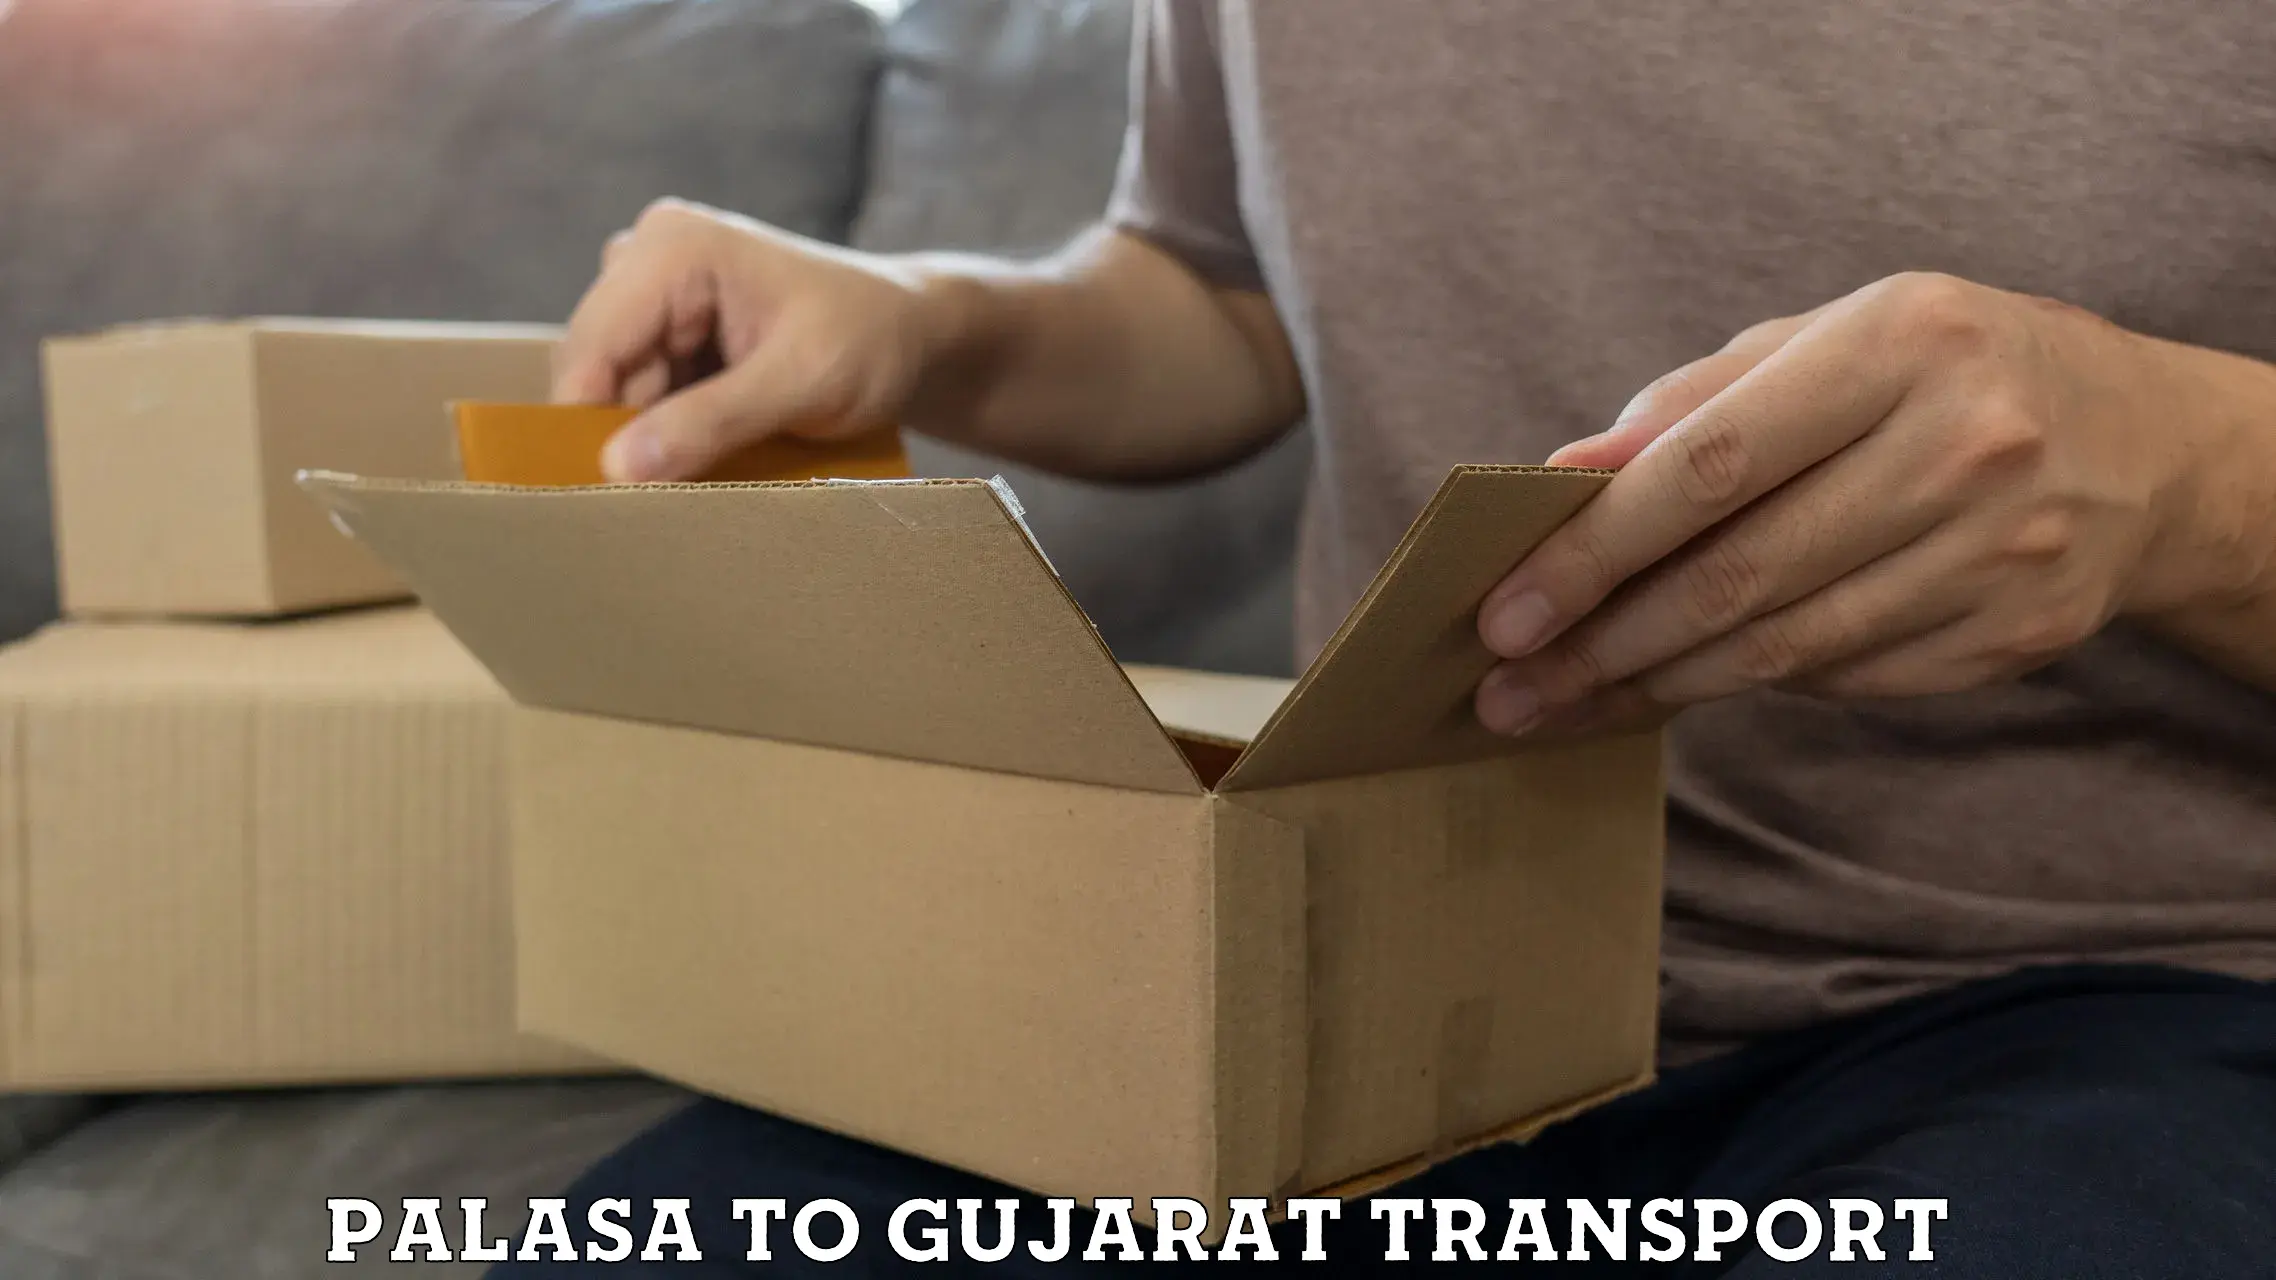 Furniture transport service in Palasa to Gujarat